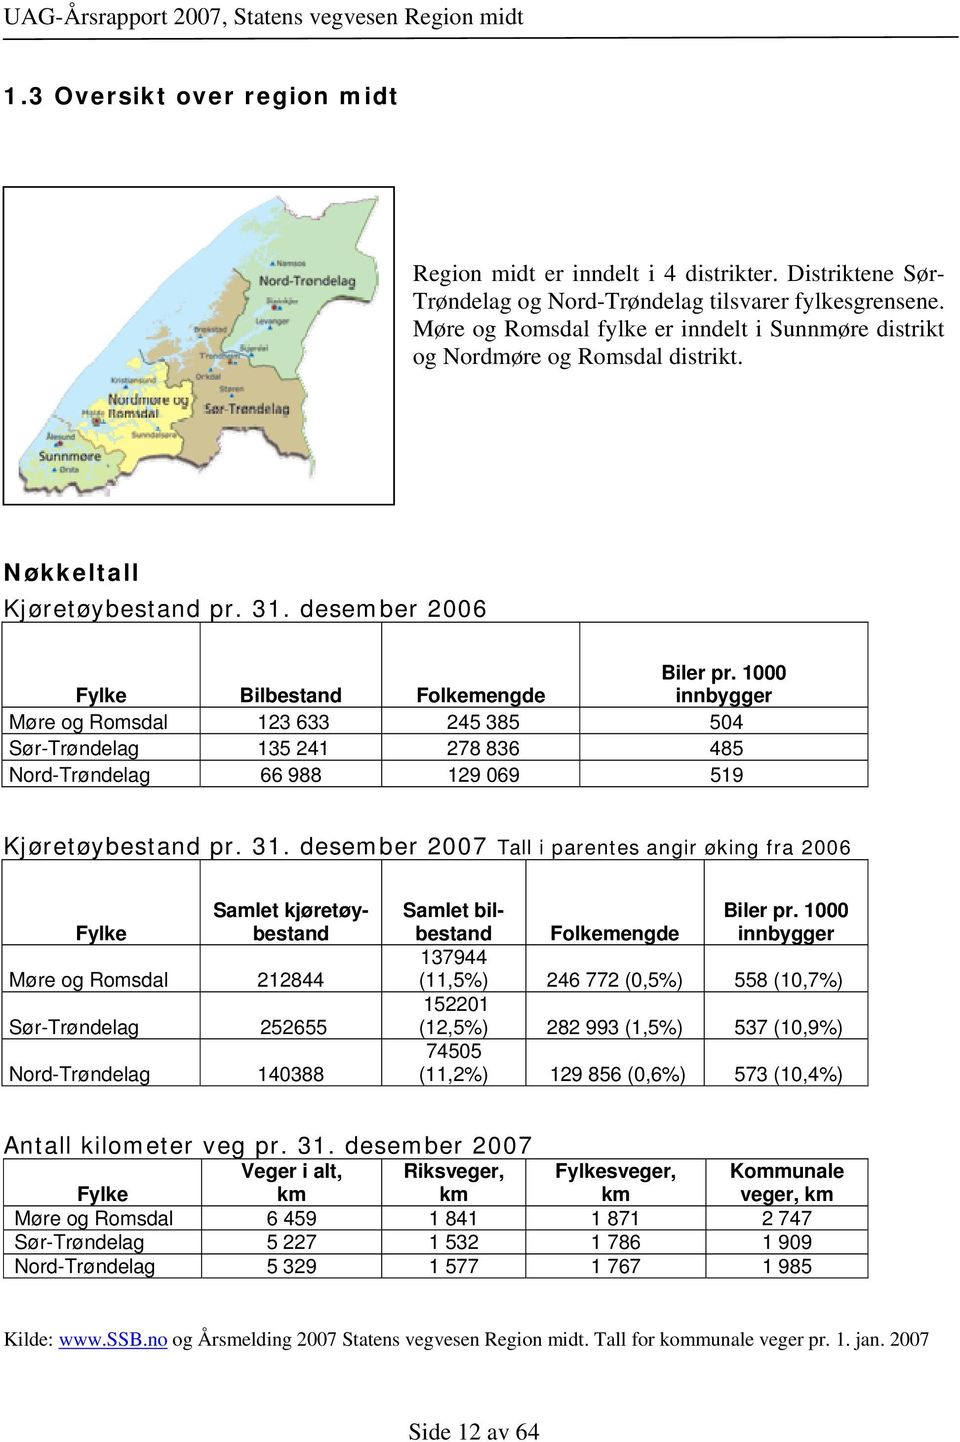 1000 innbygger Møre og Romsdal 123 633 245 385 504 Sør-Trøndelag 135 241 278 836 485 Nord-Trøndelag 66 988 129 069 519 Kjøretøybestand pr. 31.